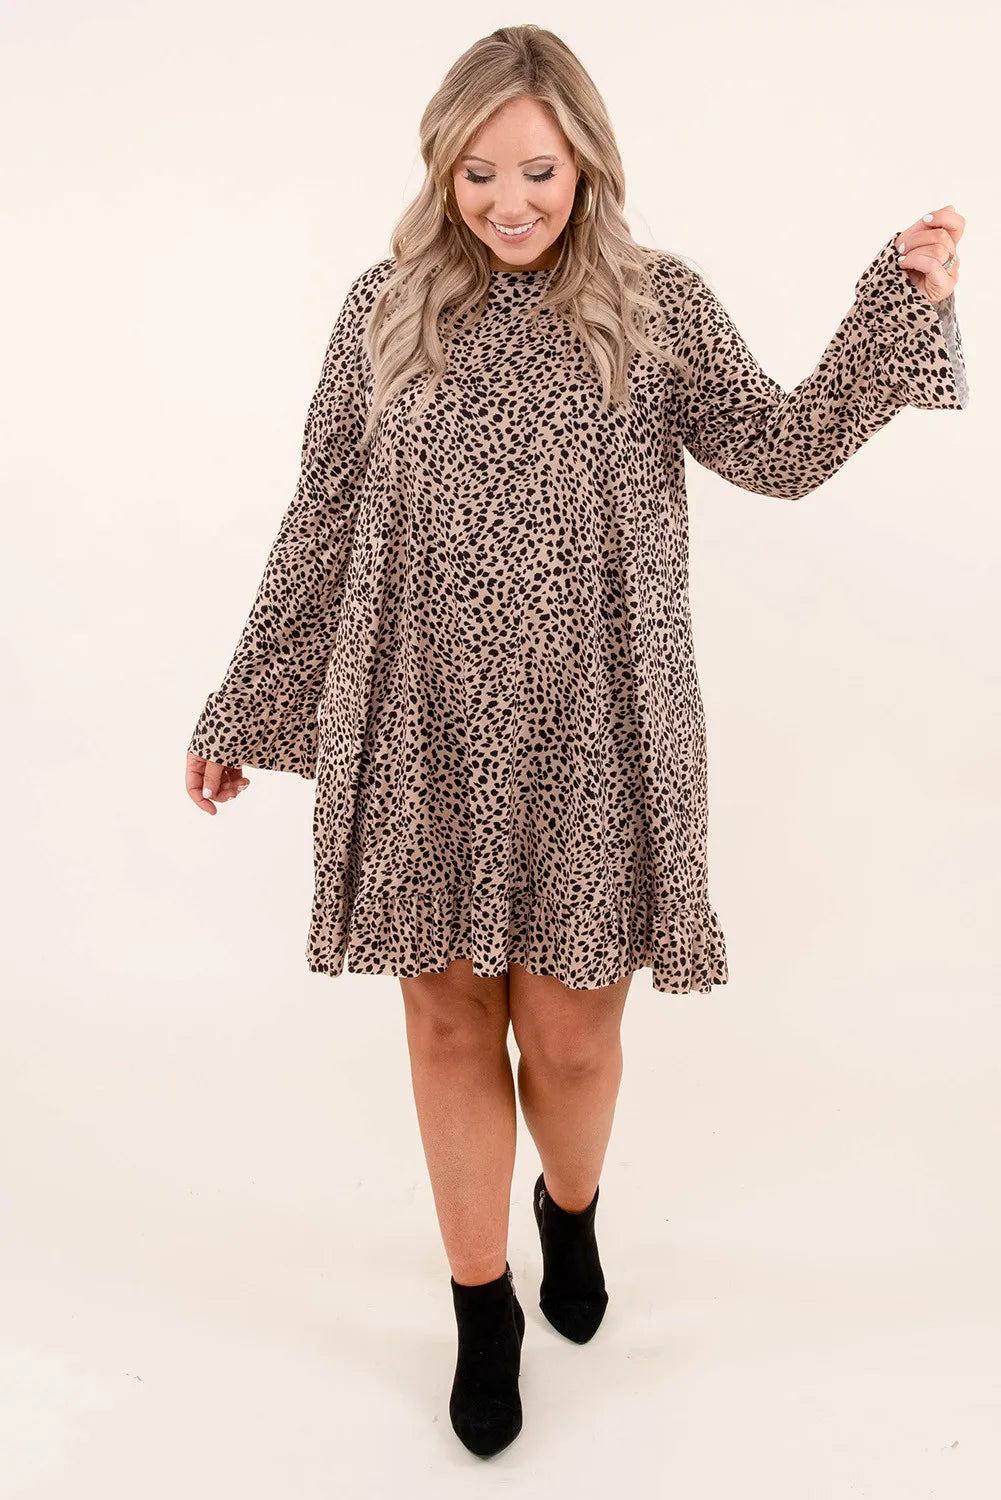 Leopard Ruffle Curvy Dress - sale